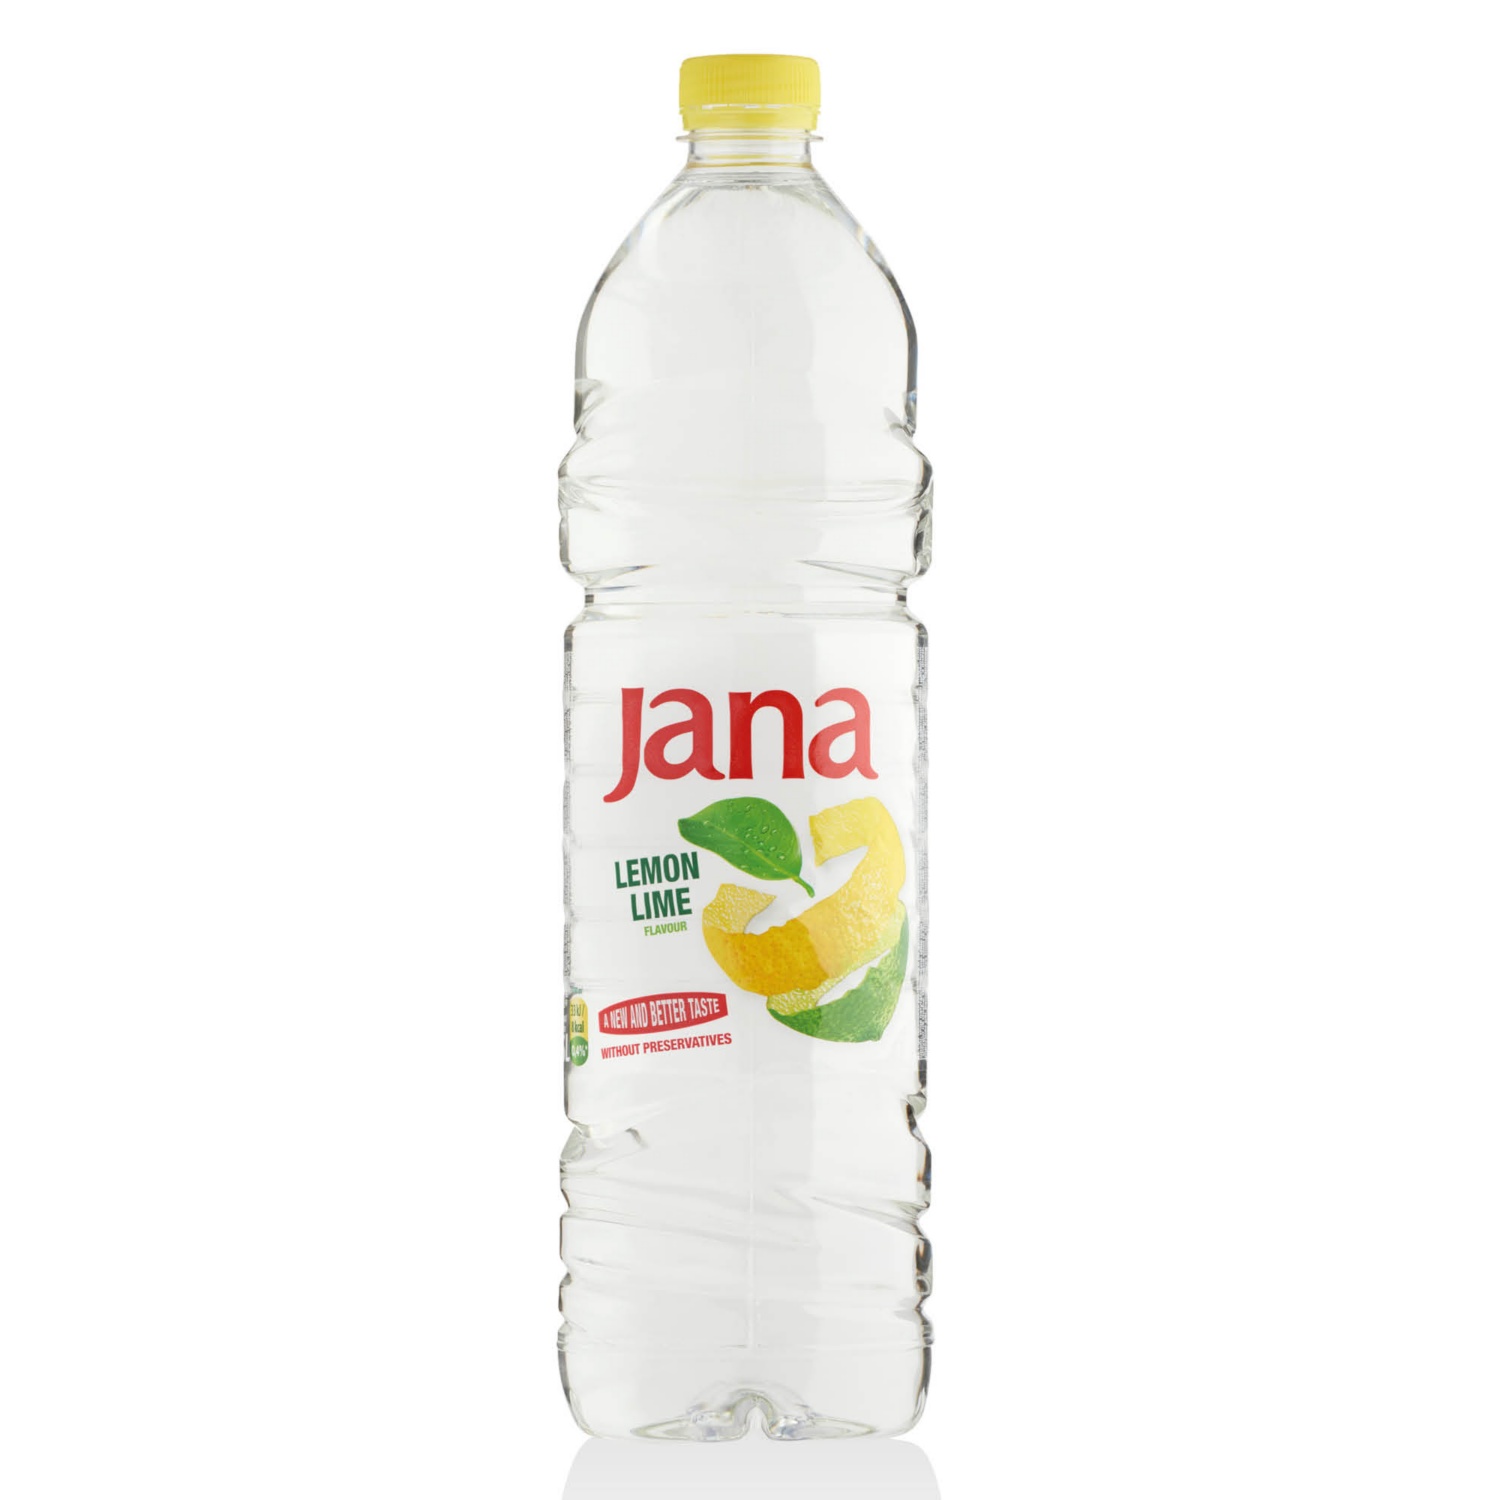 JANA Ízesített ásványvíz, 1,5 l, citrom-lime